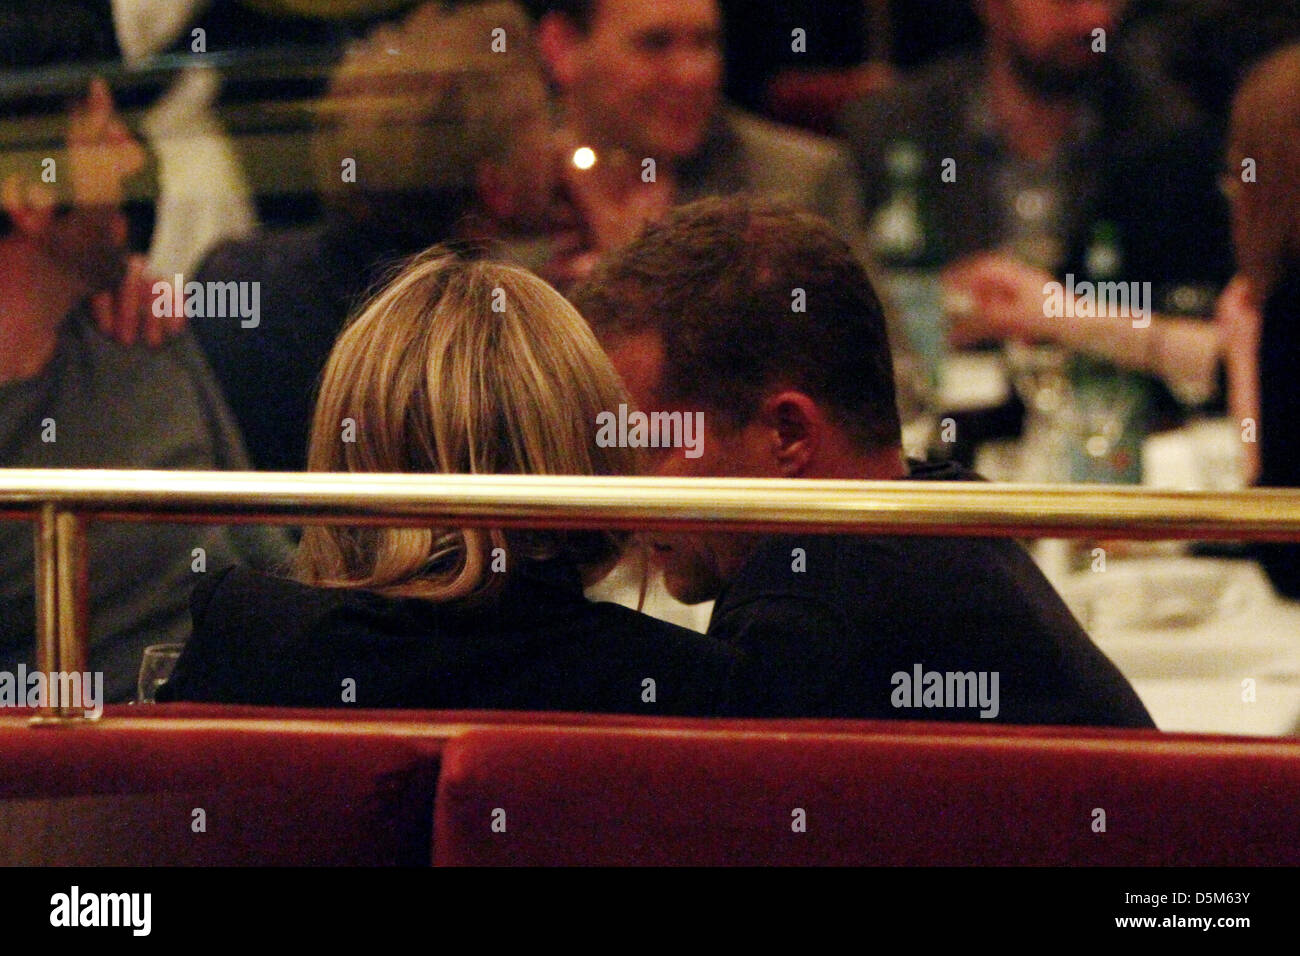 Til Schweiger und seine Freundin Svenja Holtmann Abendessens bei Borchardt Restaurant-Berlin, Germany - 27.04.2011 Stockfoto